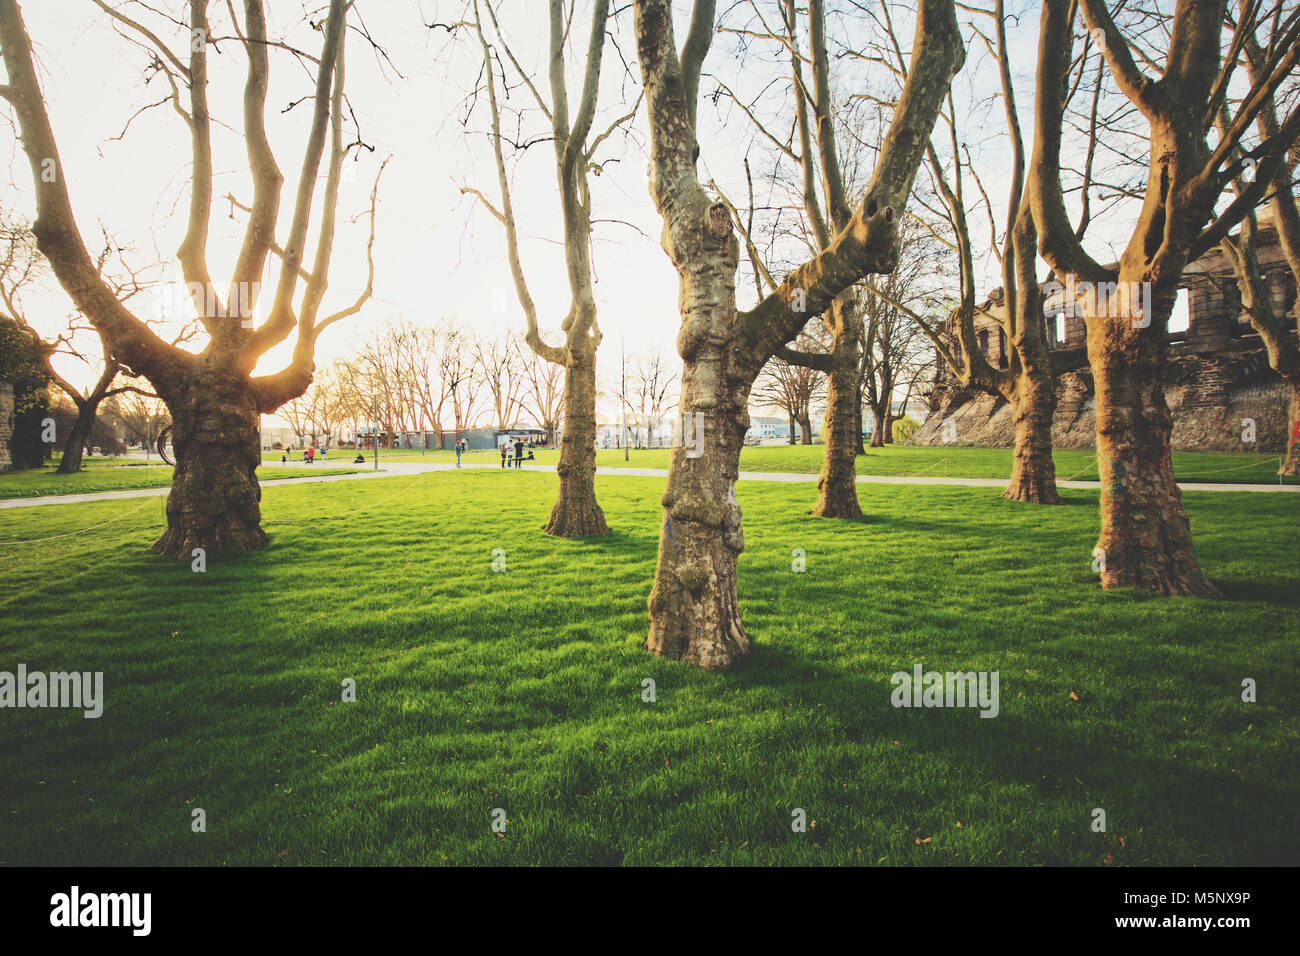 Viejos árboles con hierba verde fresca en un pintoresco parque público en la hermosa luz del atardecer dorado al atardecer Foto de stock